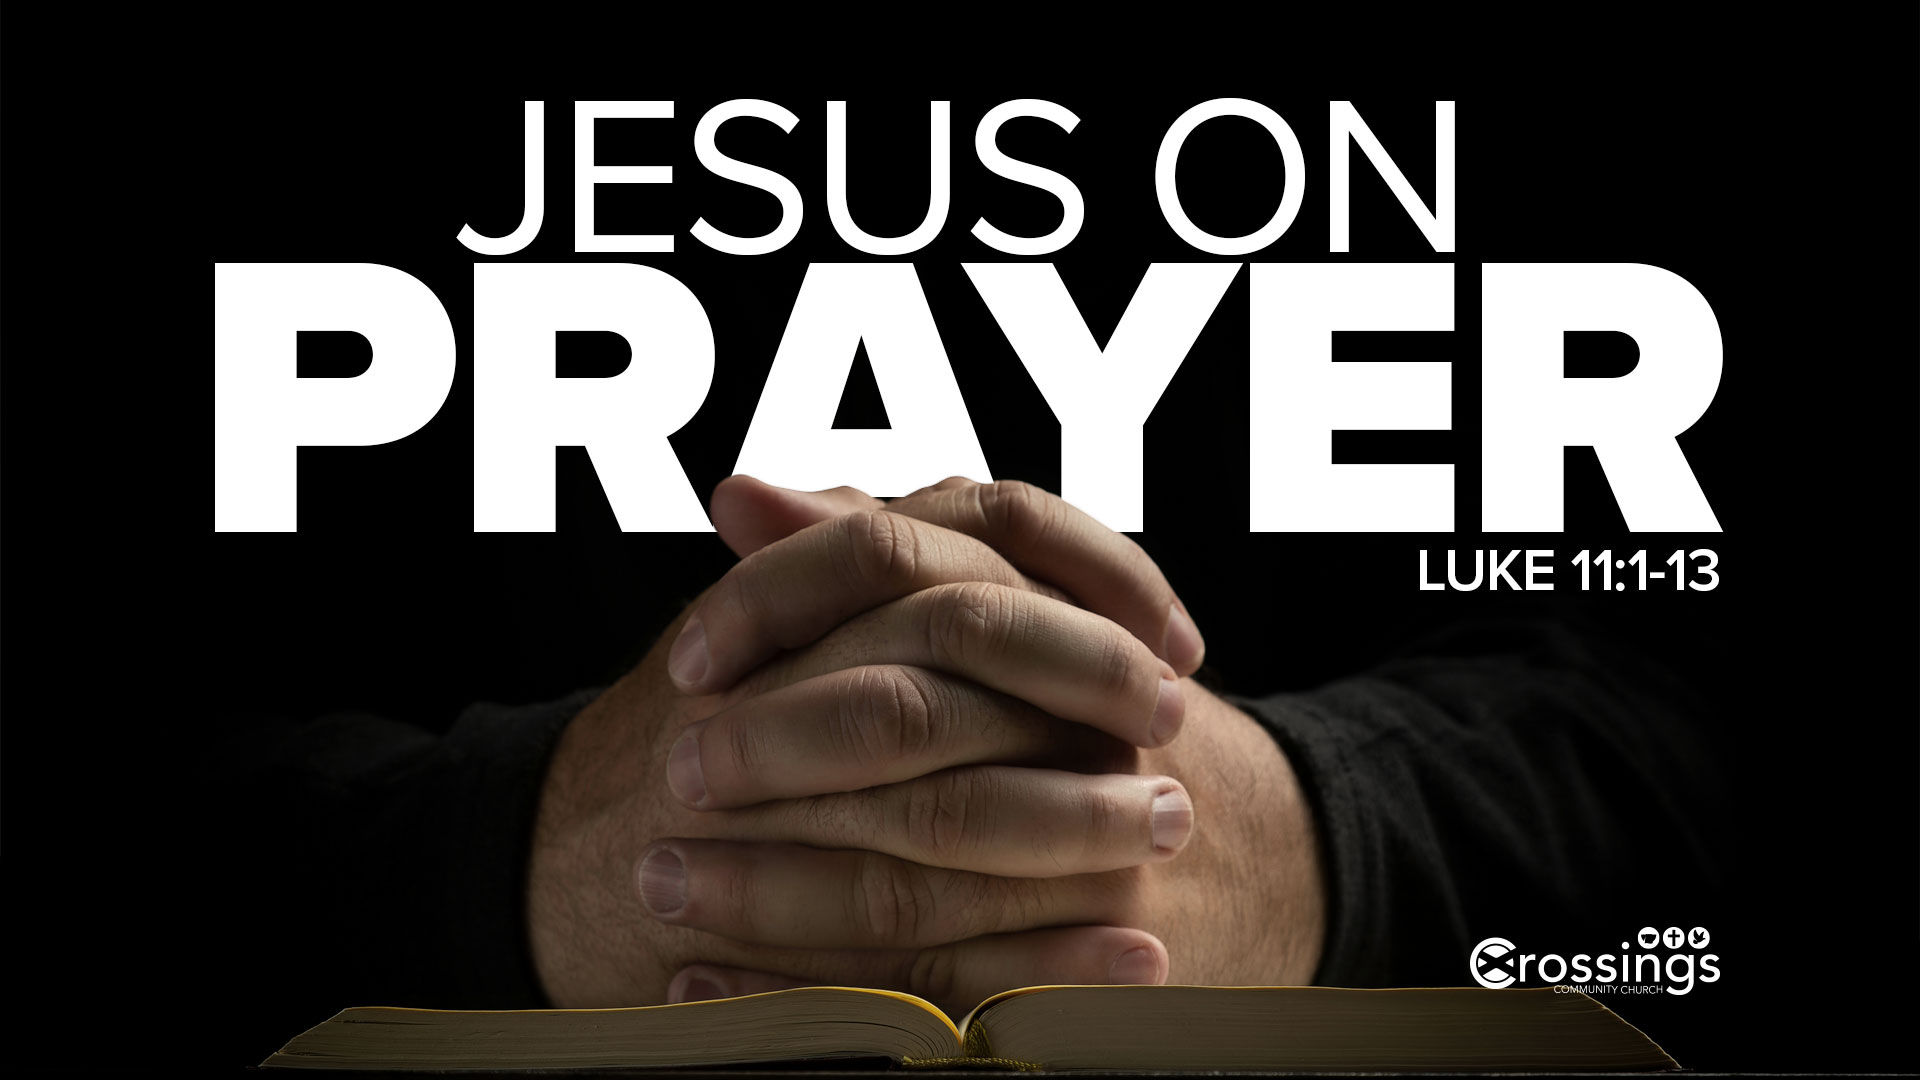 Jesus' Teaching On Prayer